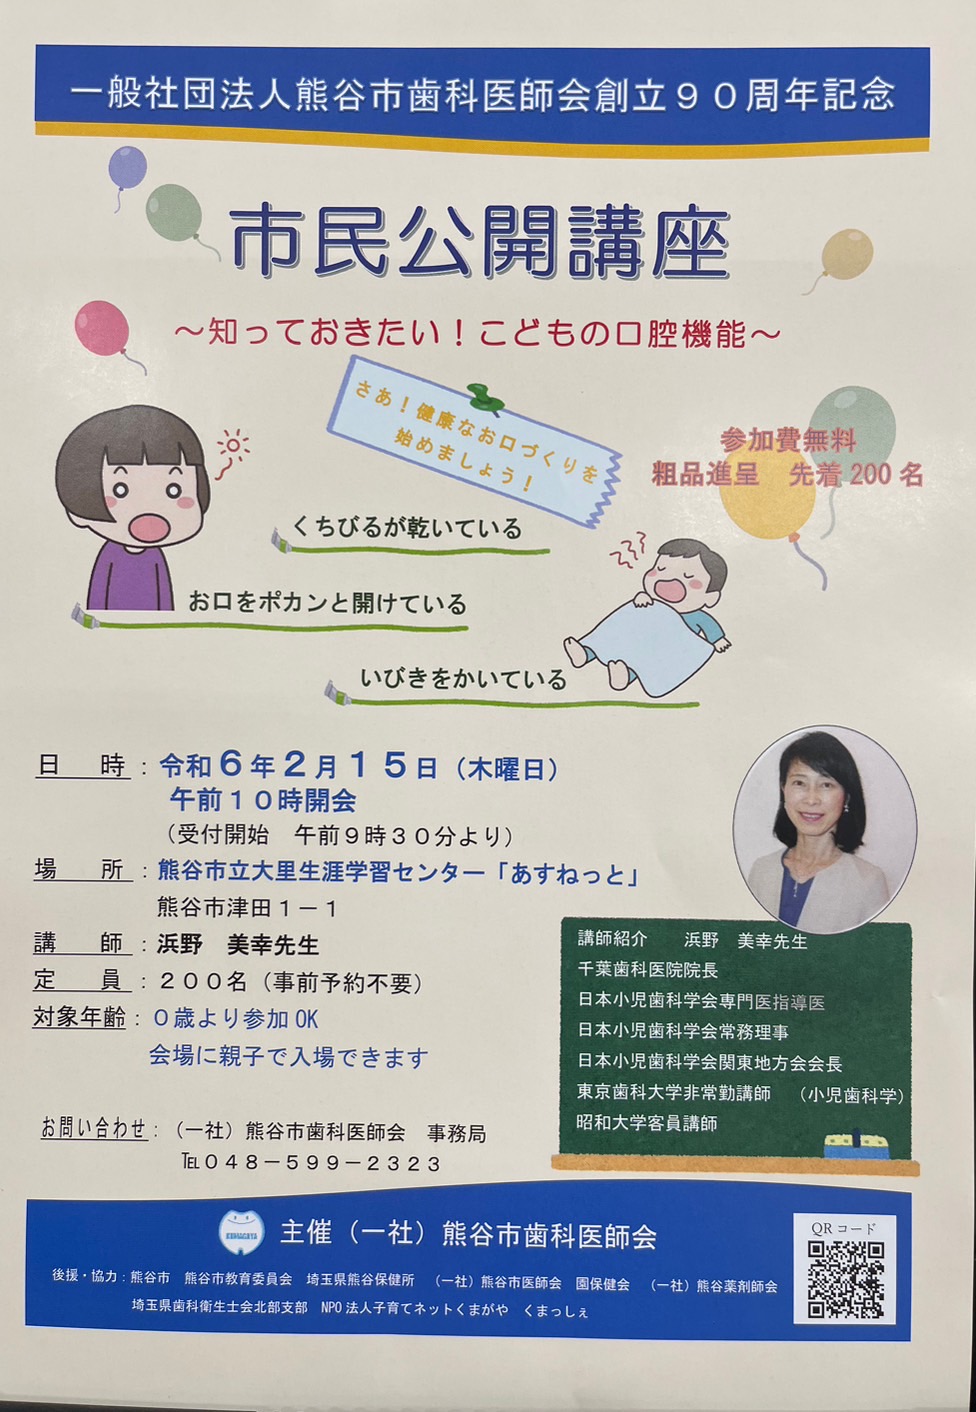 熊谷市歯科医師会「市民公開講座」のおしらせ！！